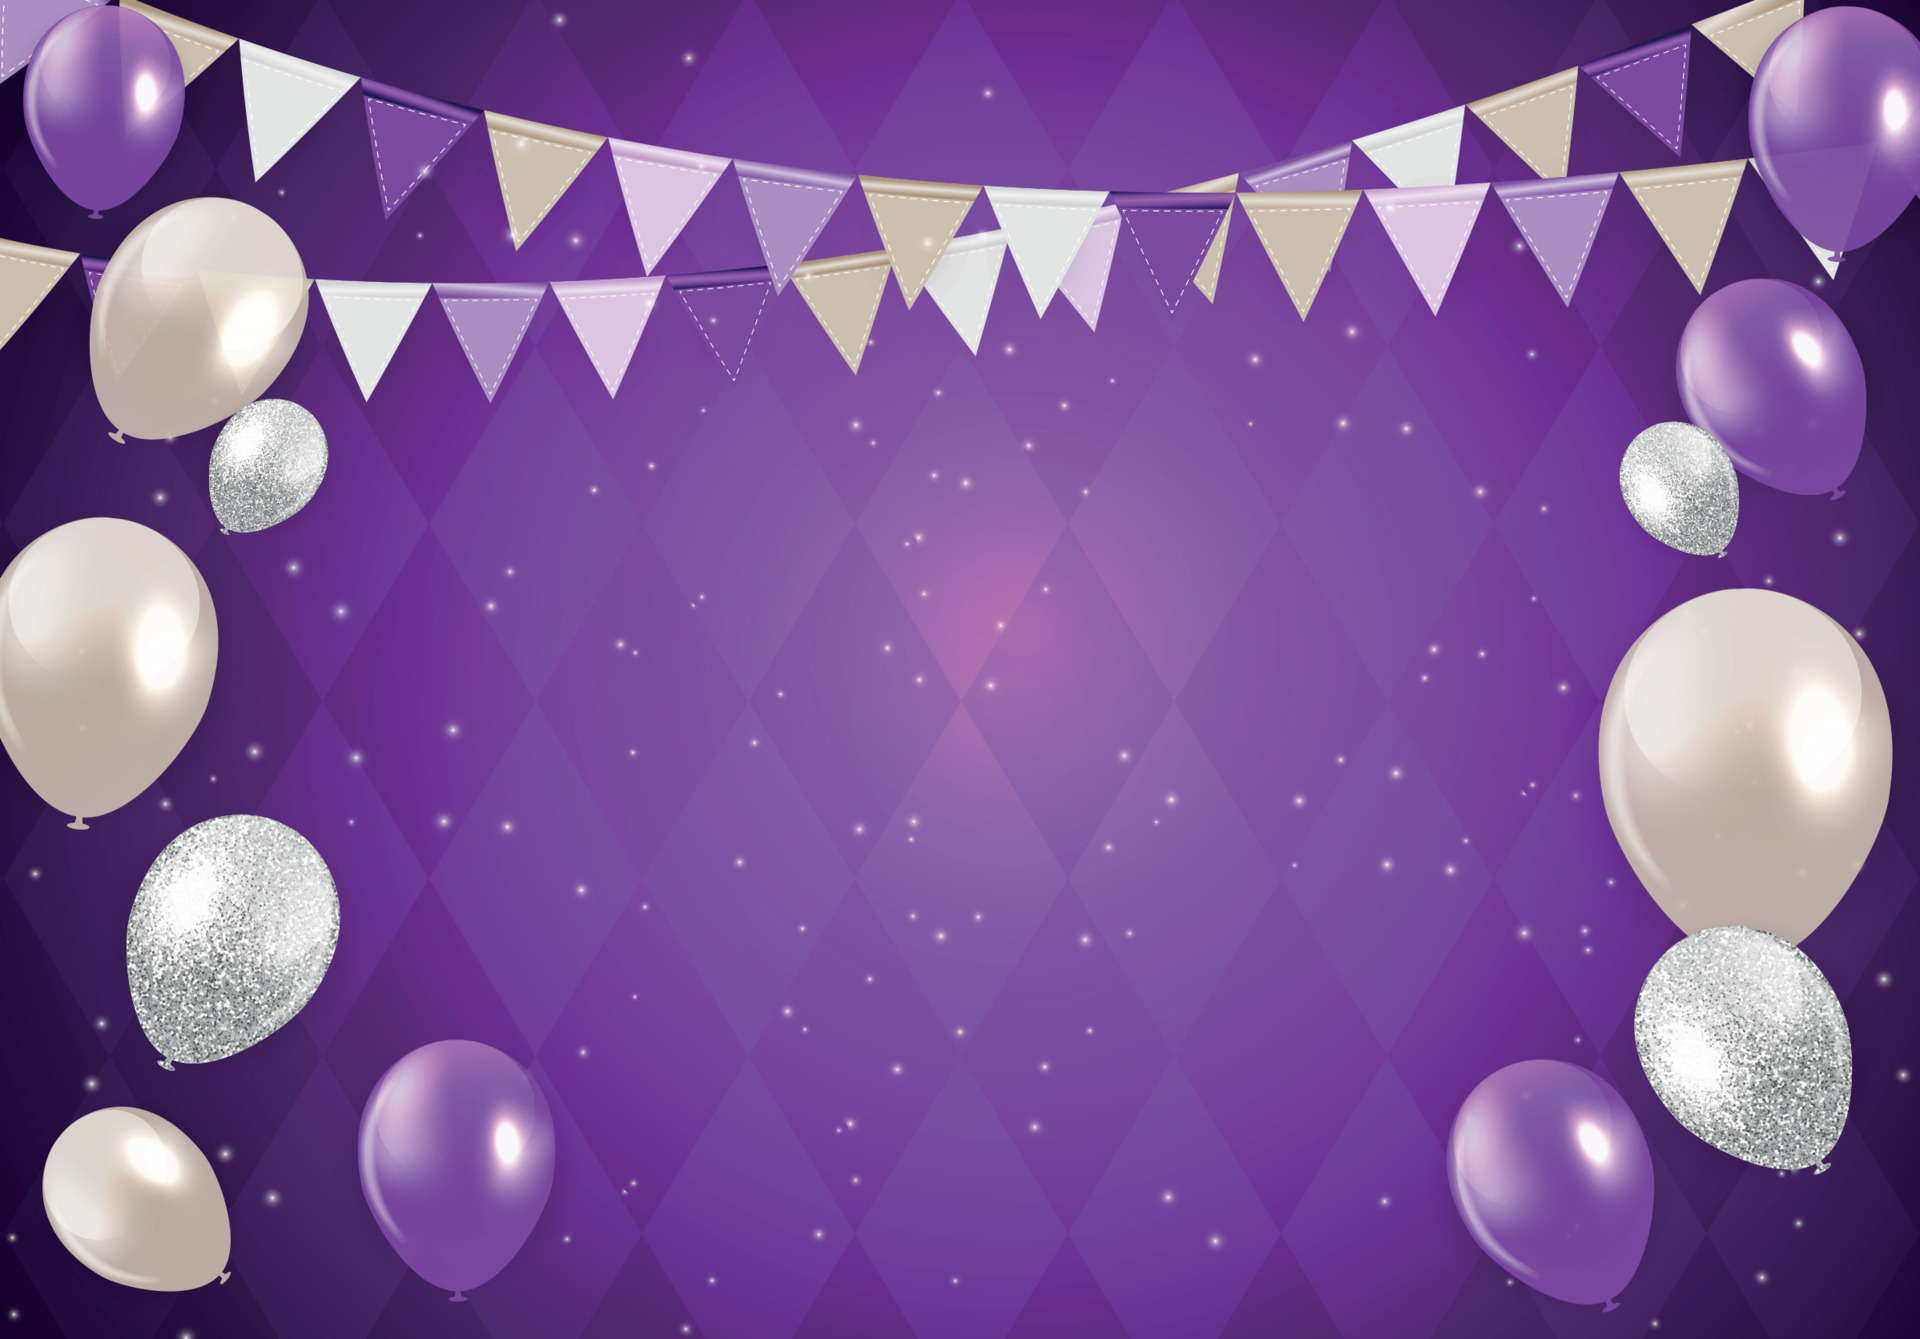 Hình nền với những chiếc bóng bay sinh nhật rực rỡ sẽ đem lại cho bạn không khí vui vẻ và phấn khởi cho mỗi bữa tiệc sinh nhật của bạn. Với những bóng bay trang trí sinh nhật sặc sỡ này, bữa tiệc của bạn sẽ trở nên nổi bật và đầy màu sắc.